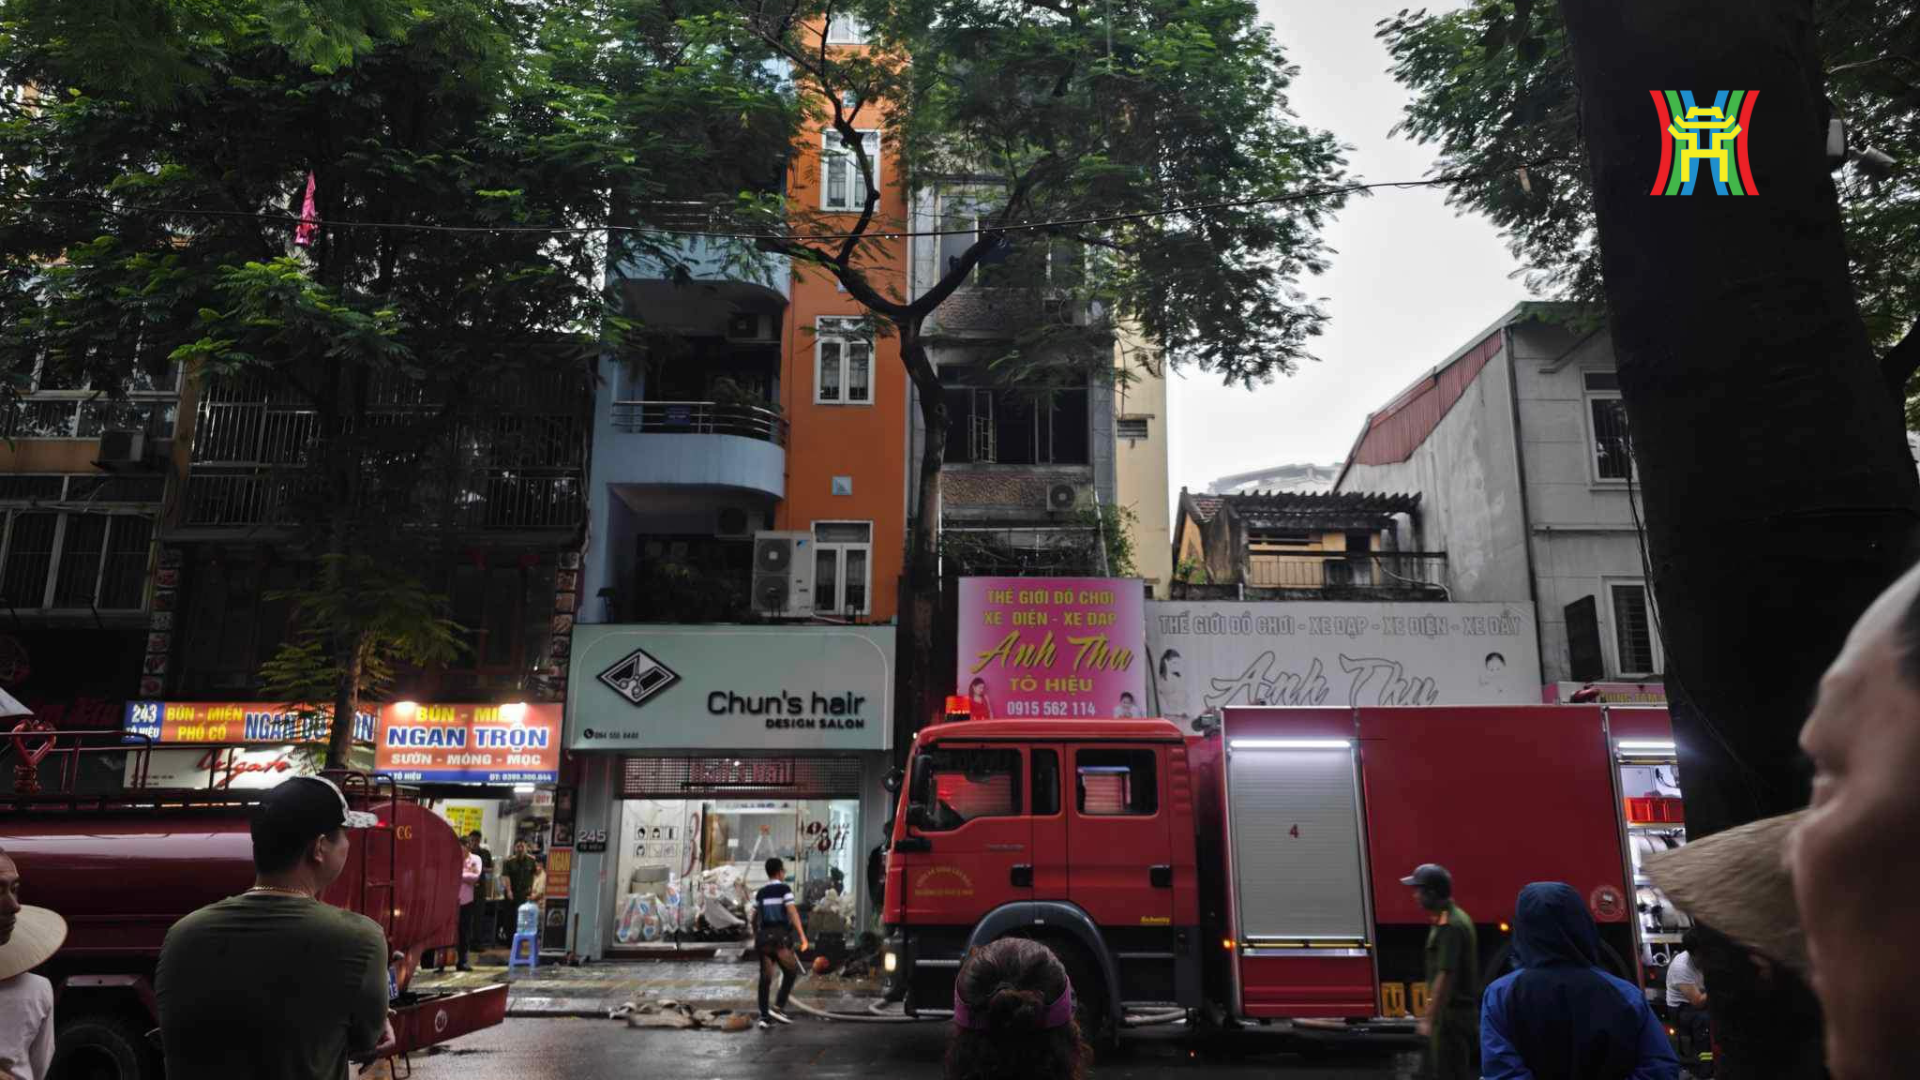 Vụ cháy cửa hàng ở Hà Nội sáng nay: 